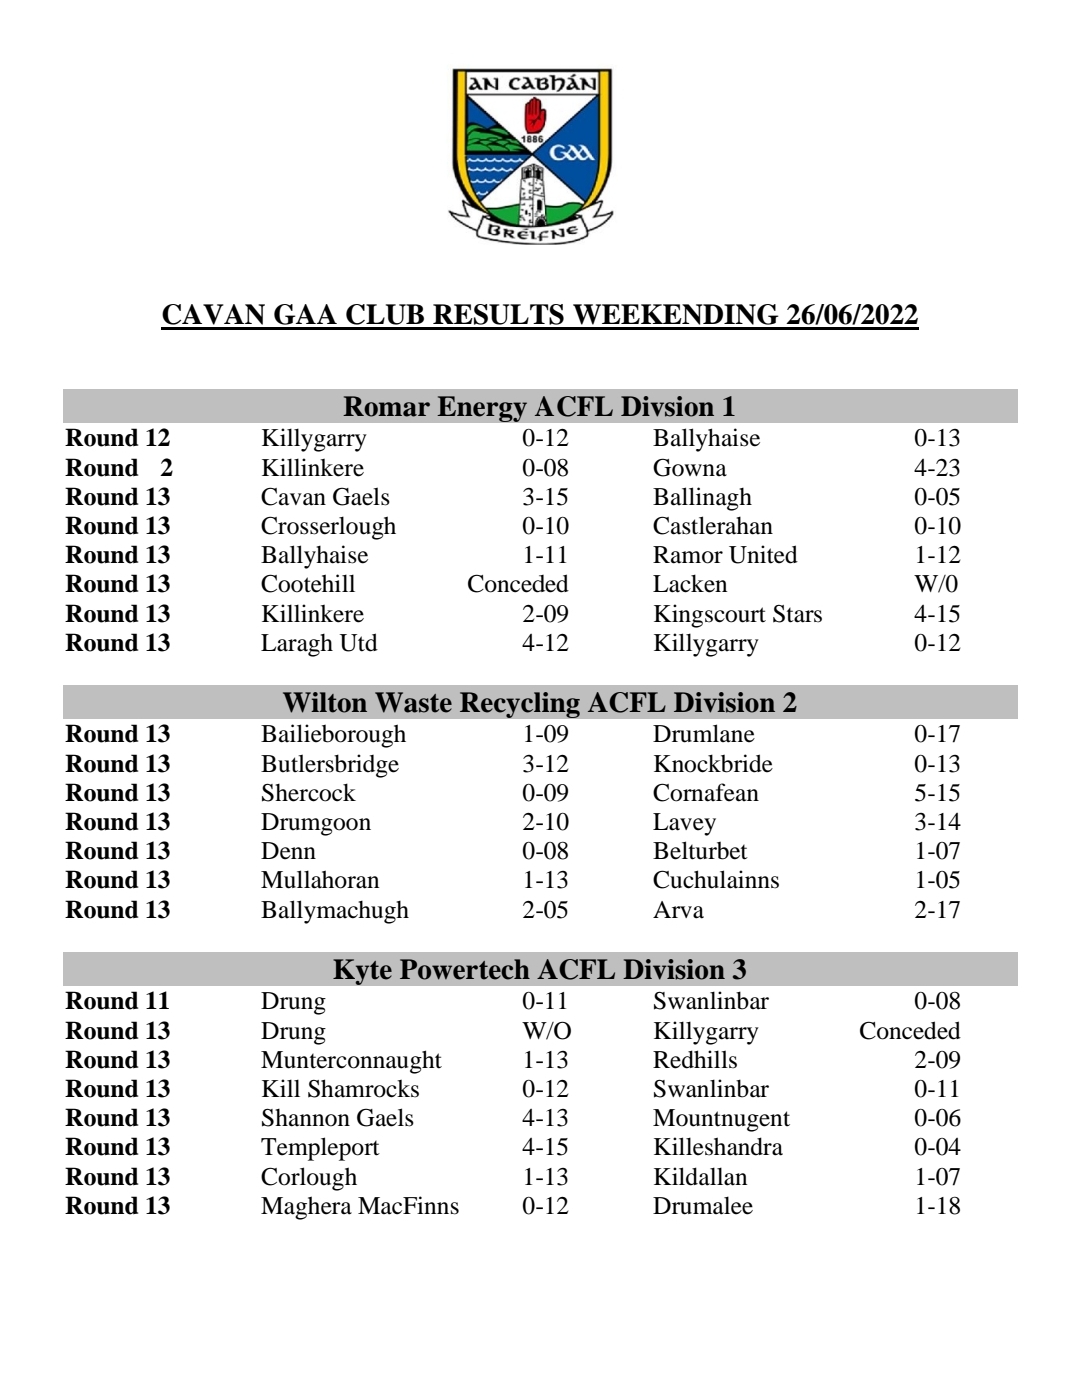 Cavan GAA Club Results weekending 26/06/22